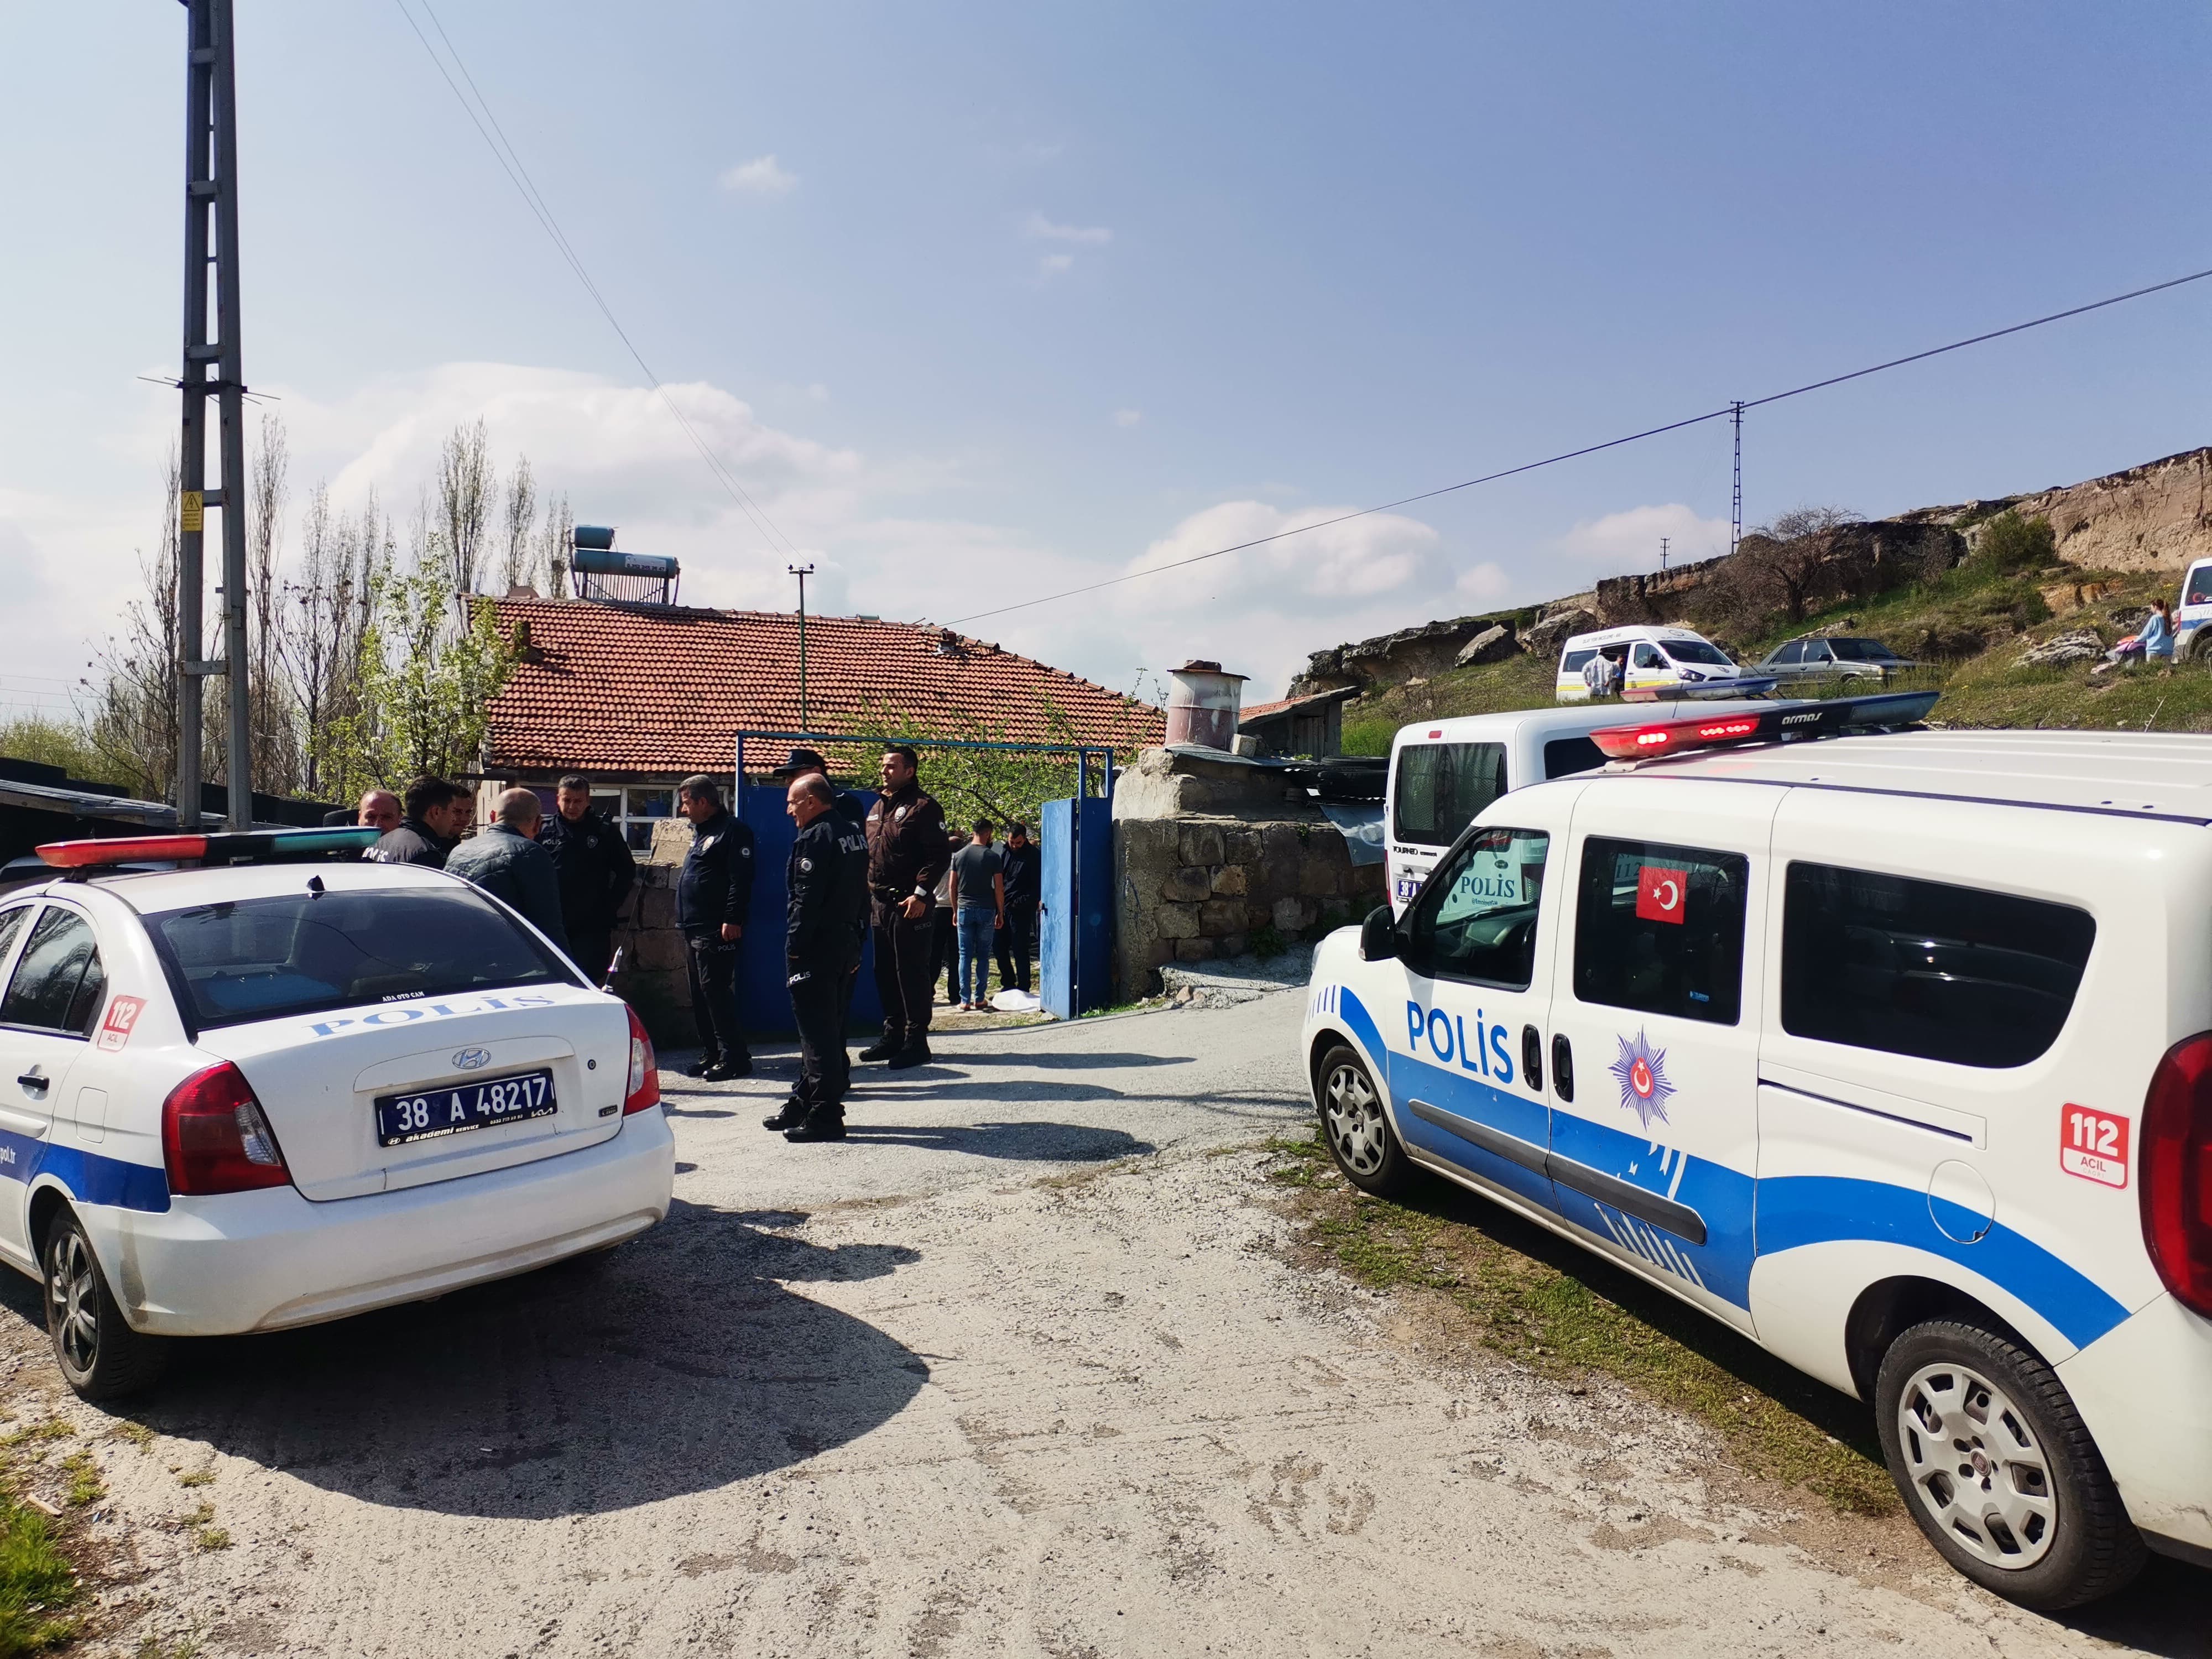 Kayseri’de acı olay: 2 genç ölü bulundu